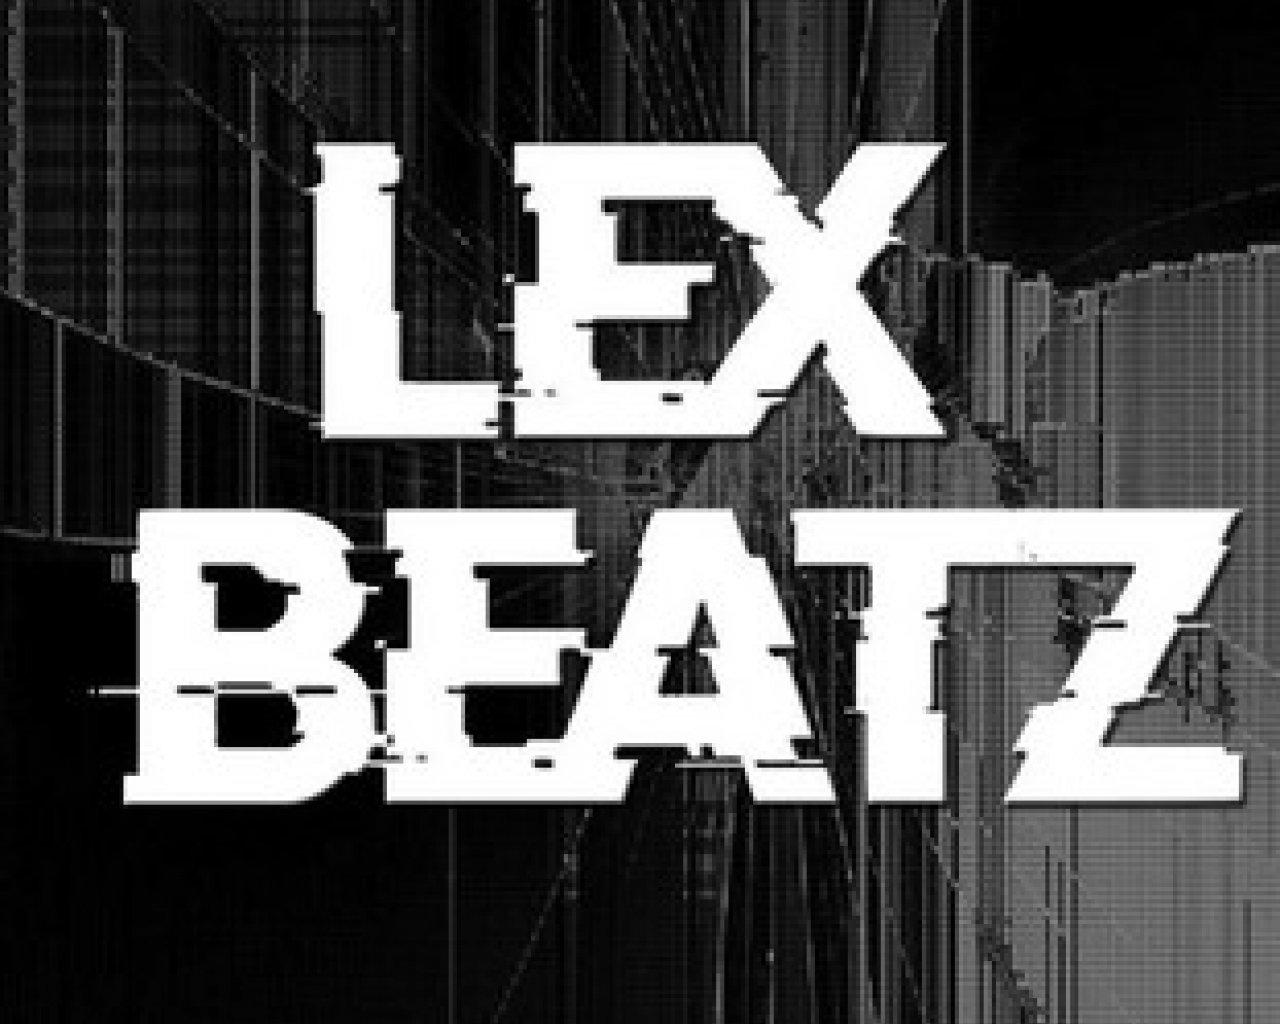 Lexbeatz